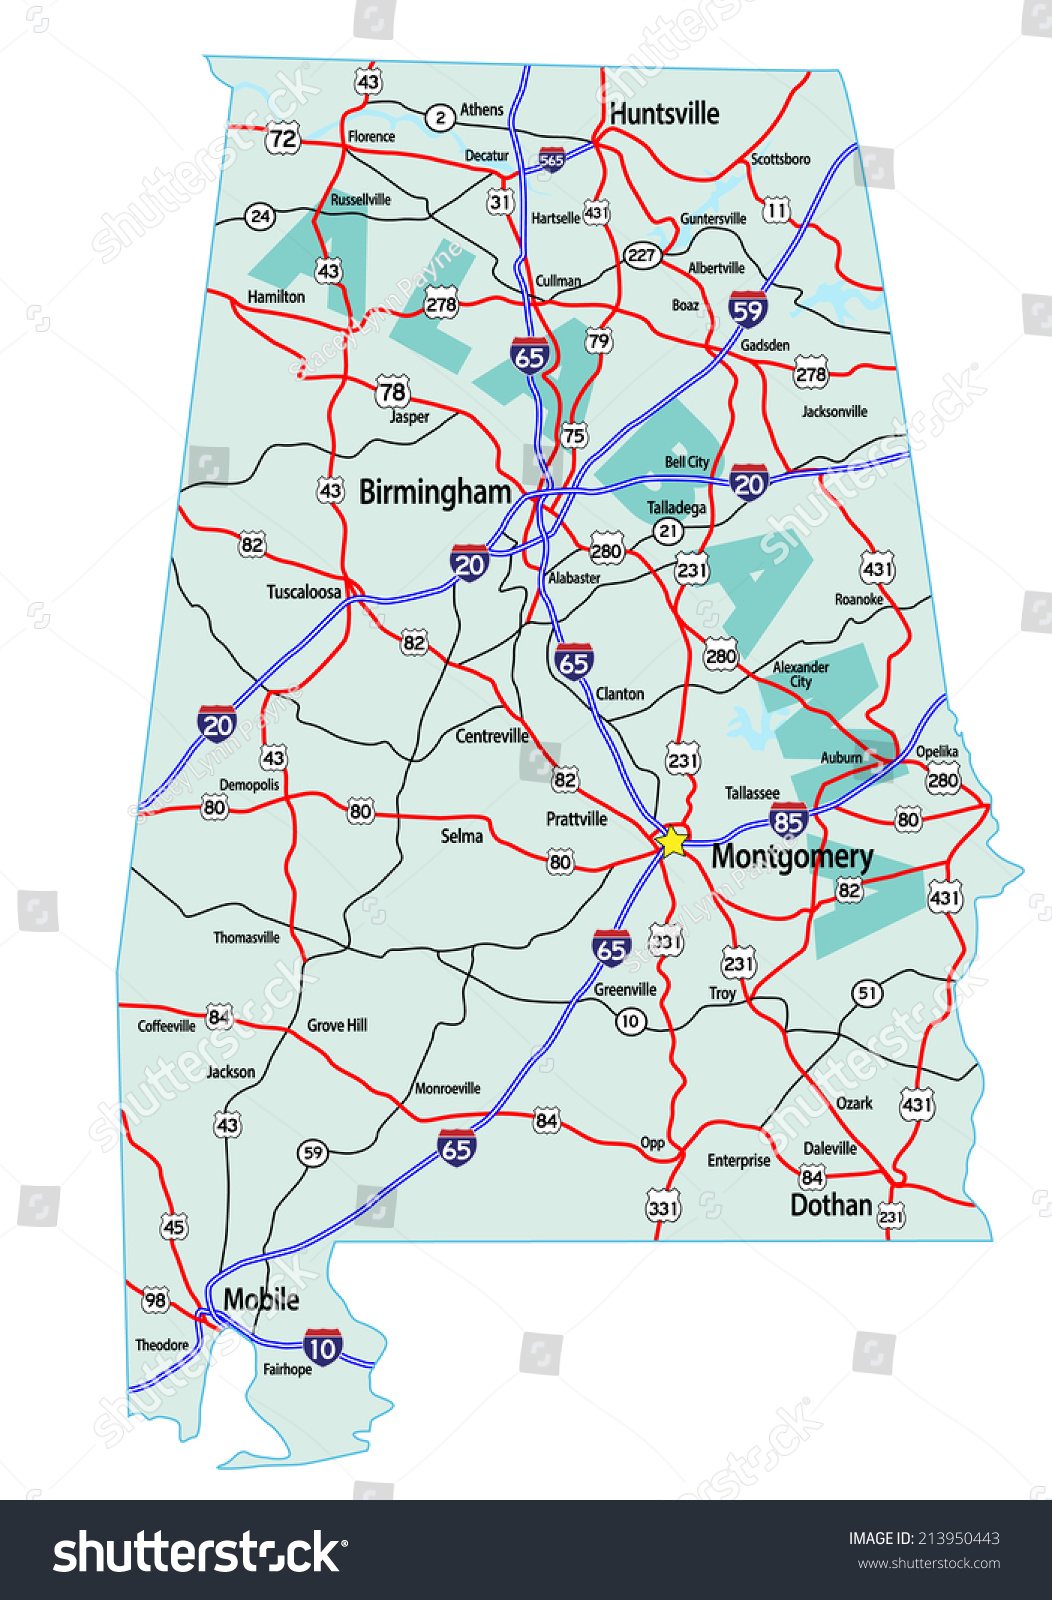 巴马州与州际公路路线图和高速公路。请注意,